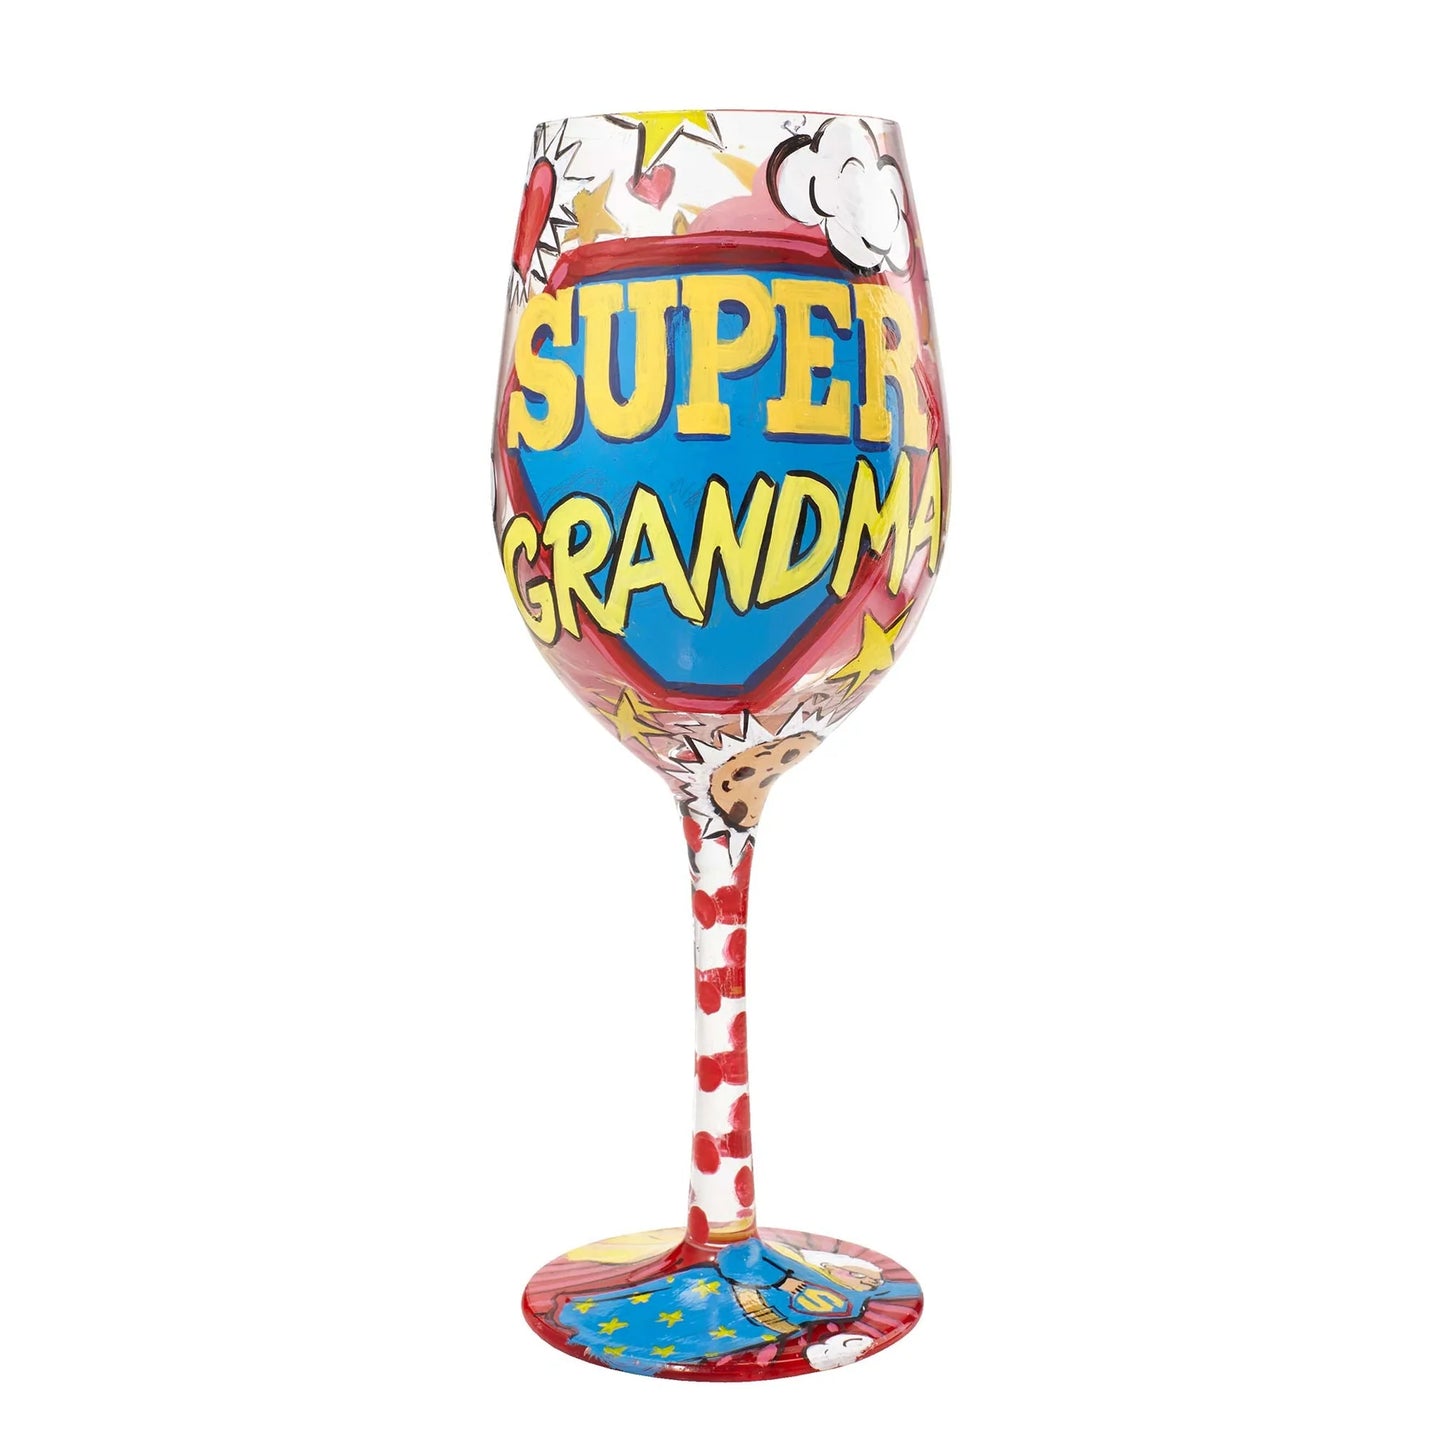 Super Grandma Wine Glass